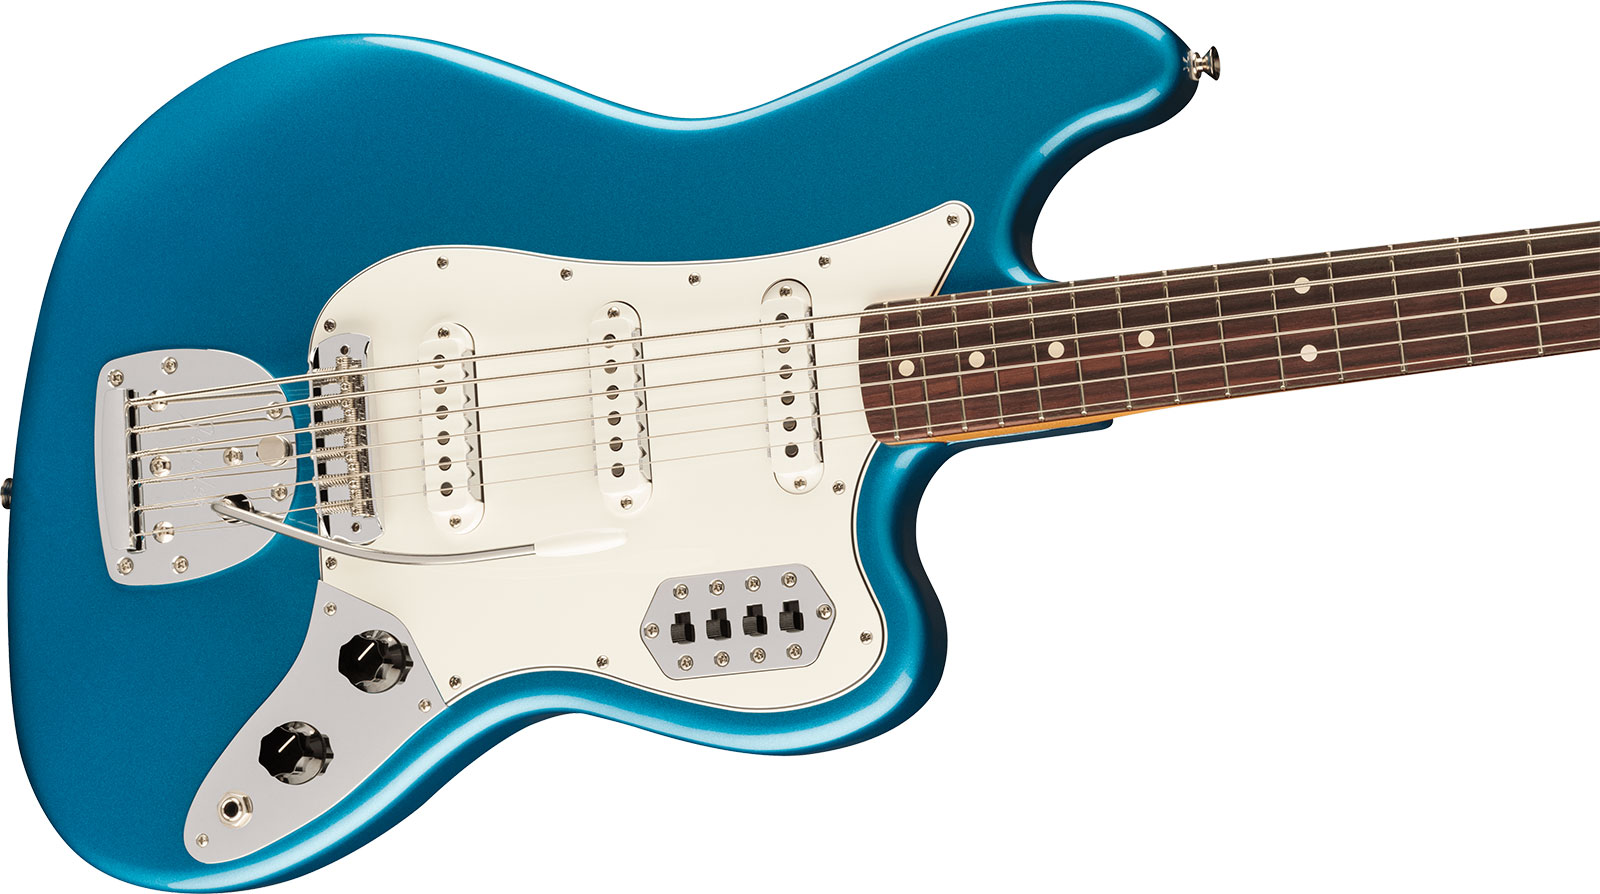 Fender 60s Bass Vi Vintera 2 3s Trem Rw - Lake Placid Blue - Bariton elektrische gitaar - Variation 2